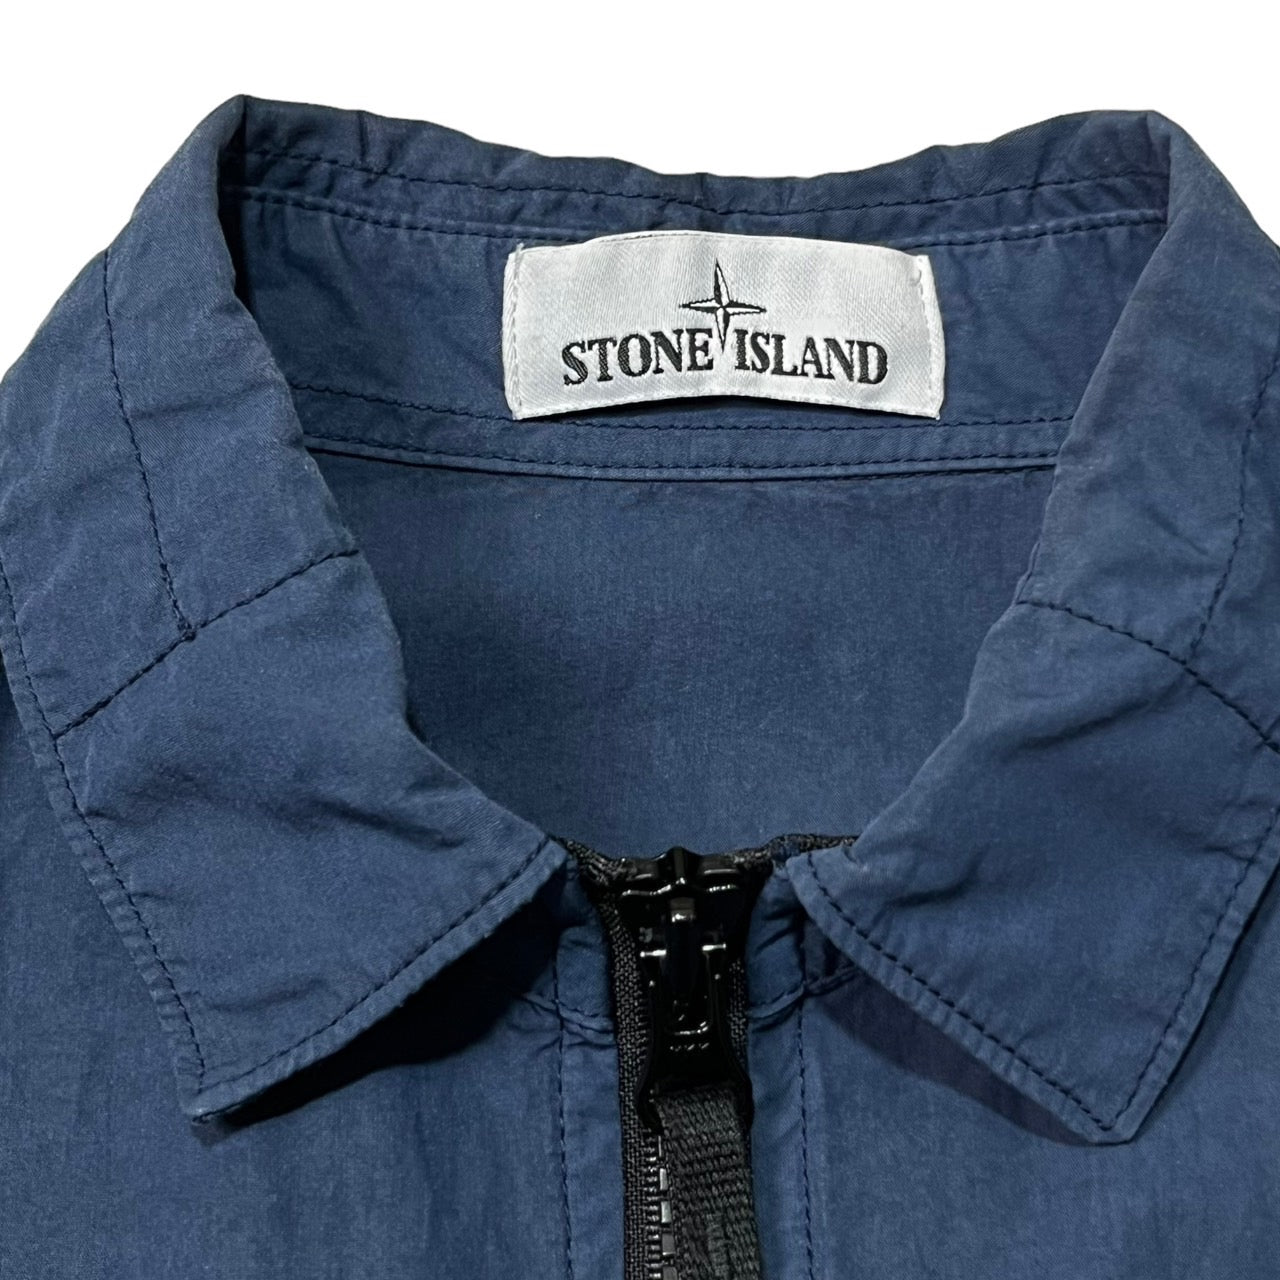 STONE ISLAND(ストーンアイランド) zip front over shirt ジップフロント オーバーシャツ　 701512208  SIZE M ネイビー